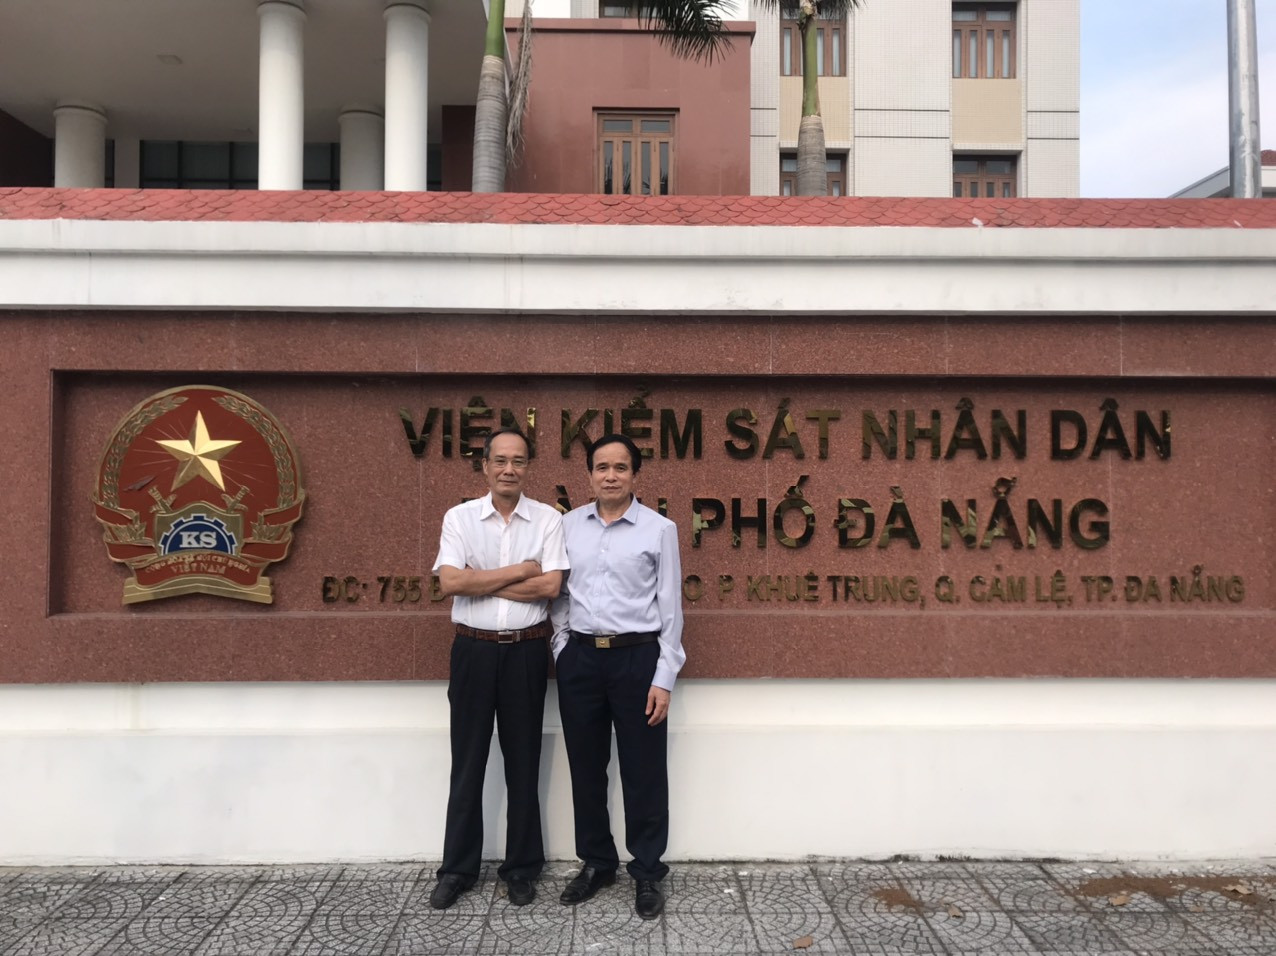 Viện kiểm sát nhân dân thành phố Đà Nẵng